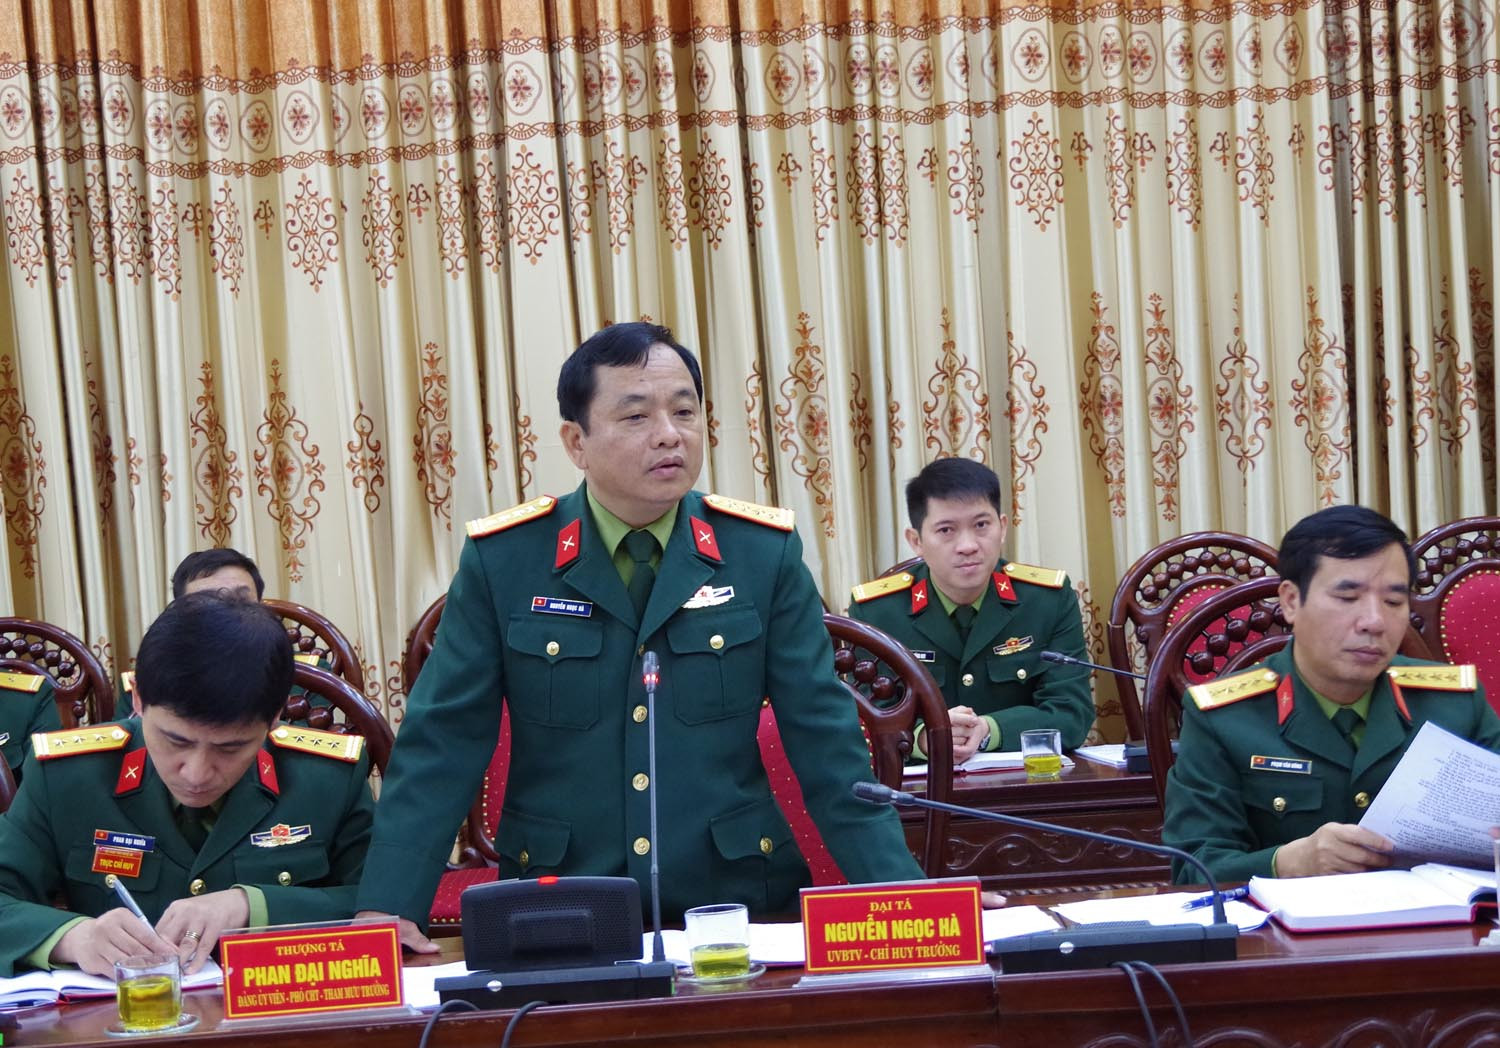 Đại tá Nguyễn Ngọc Hà, Ủy viên Ban Chấp hành Đảng bộ tỉnh, Chỉ huy trưởng Bộ CHQS tỉnh